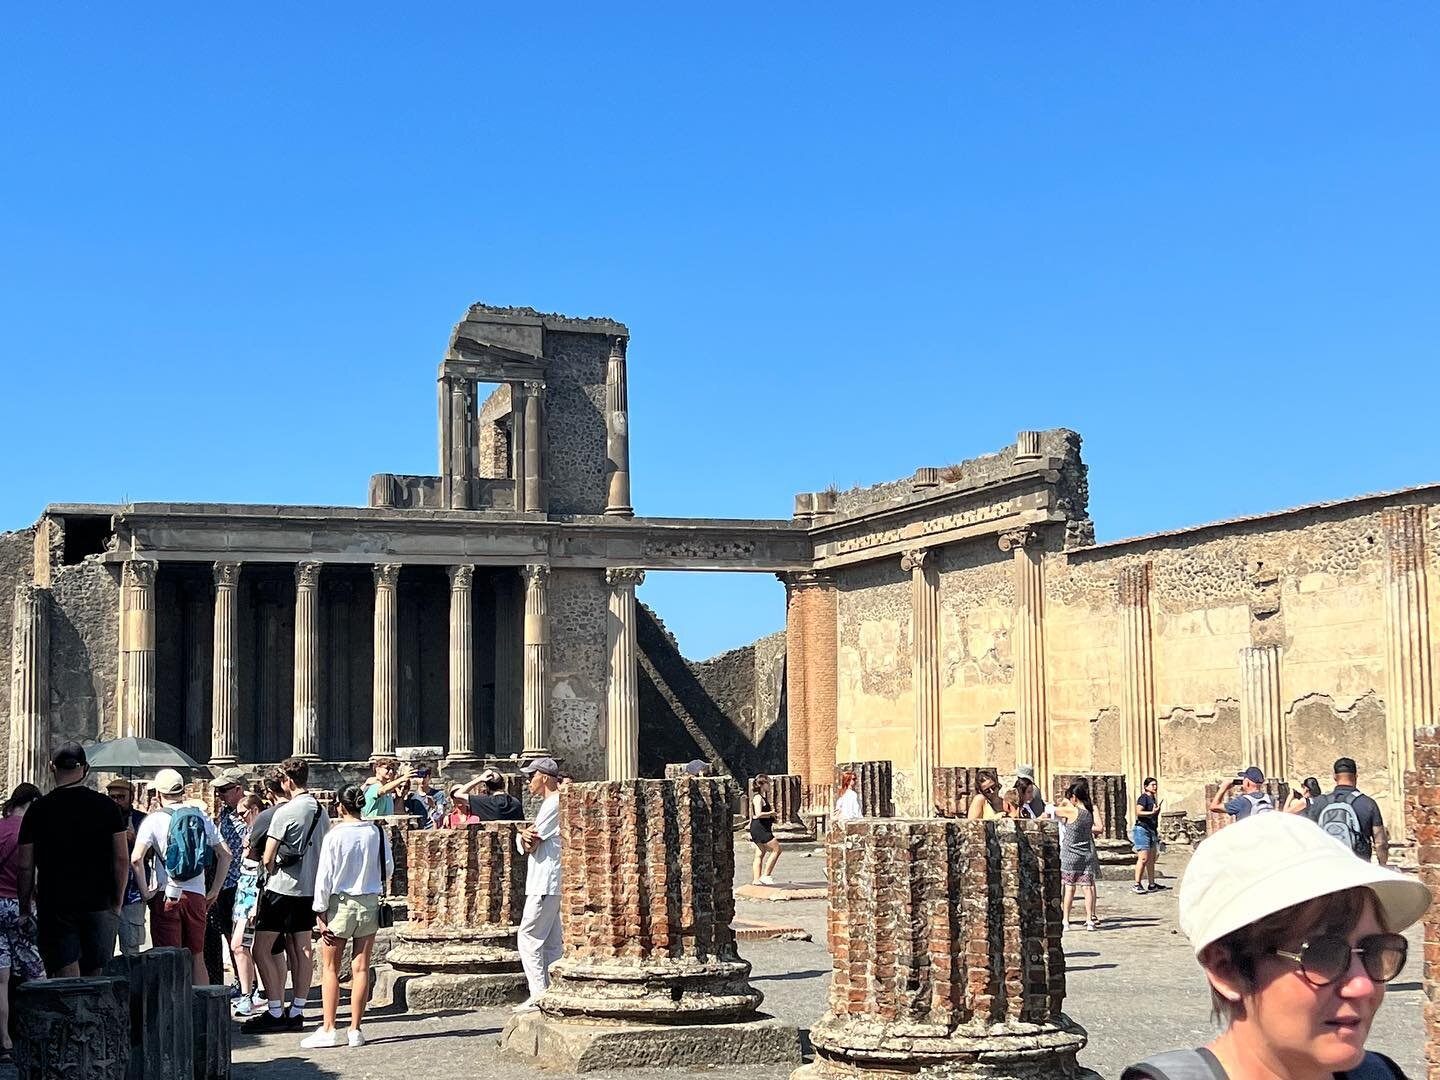 Amazing day in Pompeii